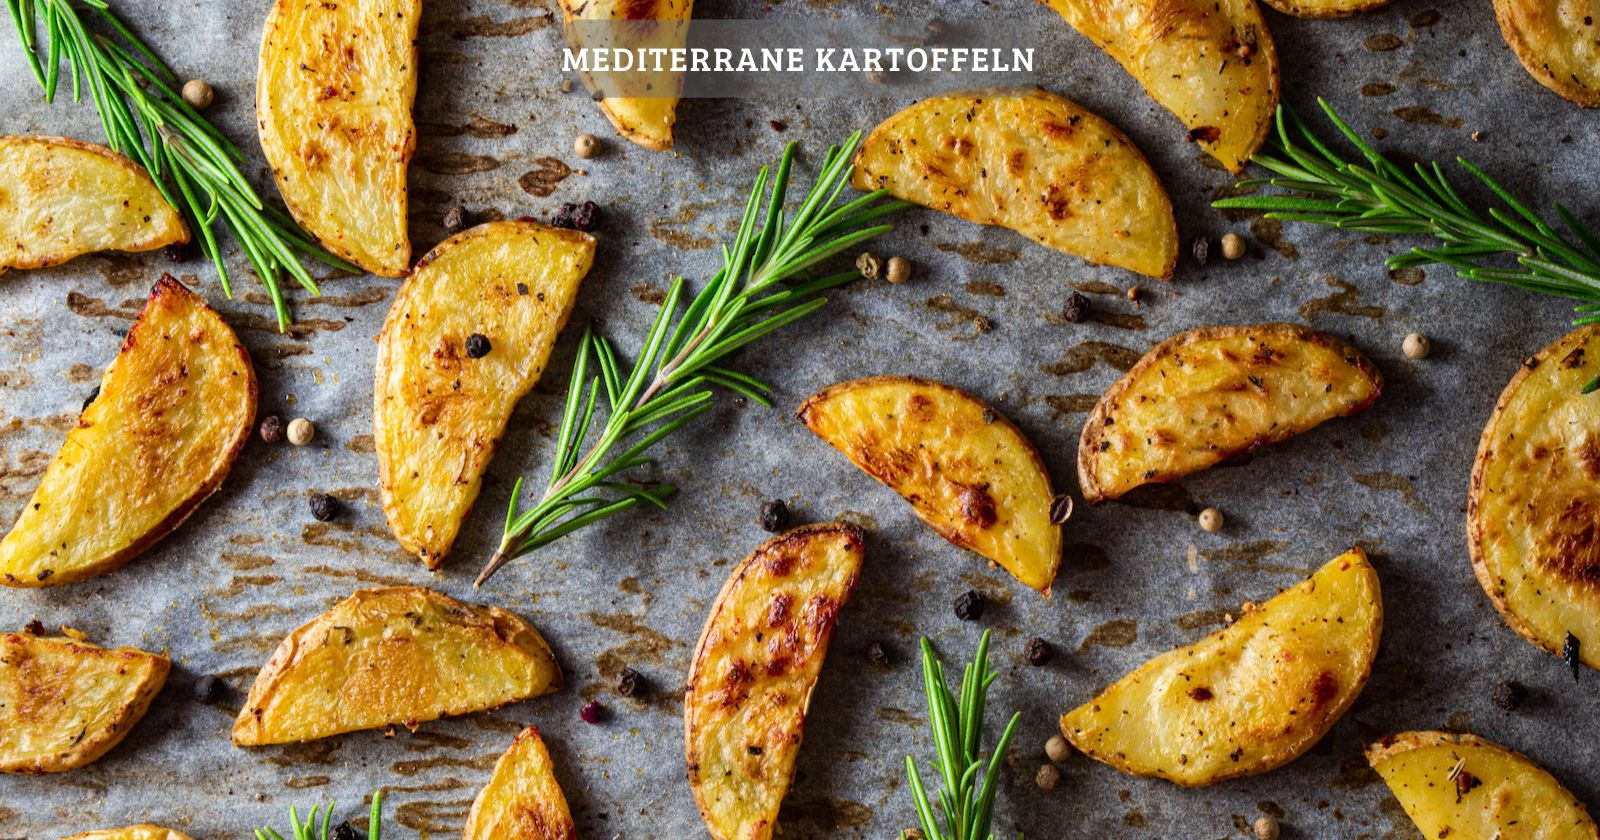 Knusprige mediterrane kartoffeln